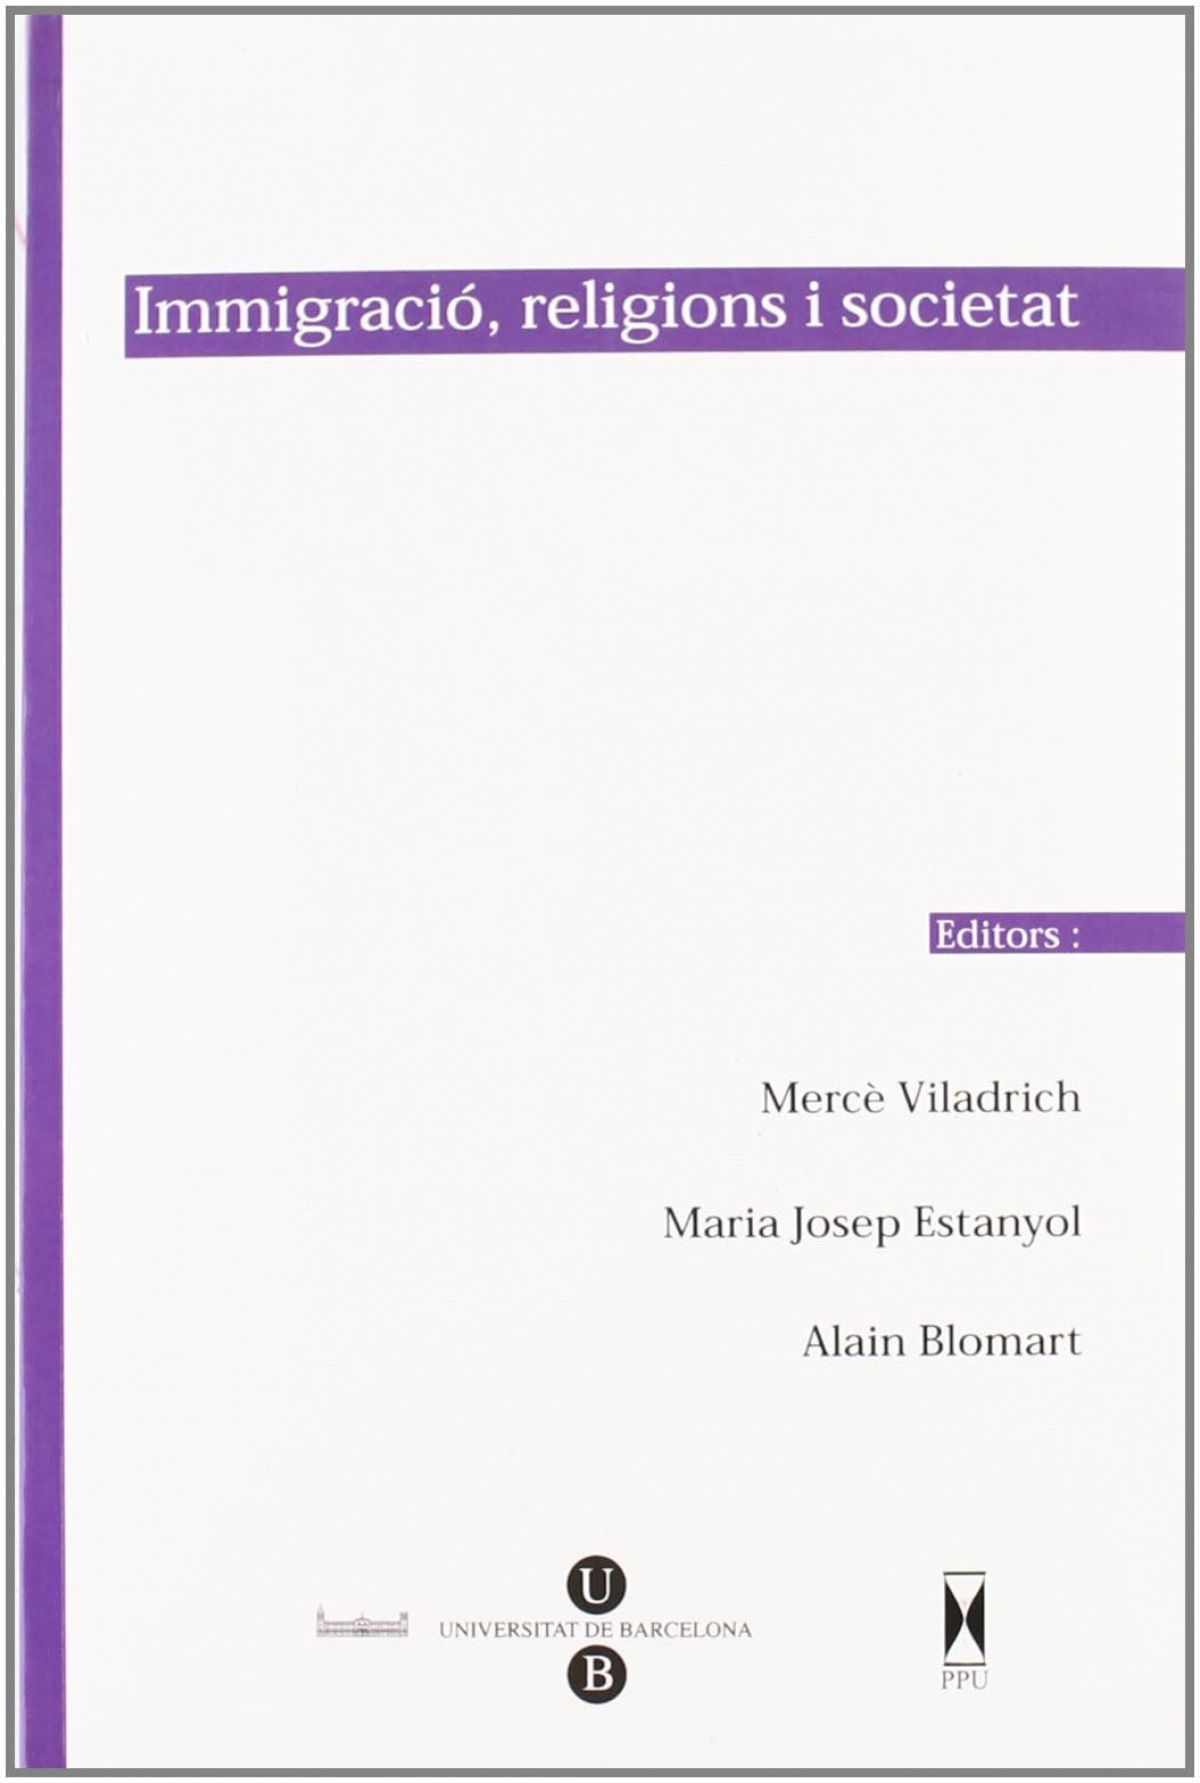 Immigracio, religions i societat